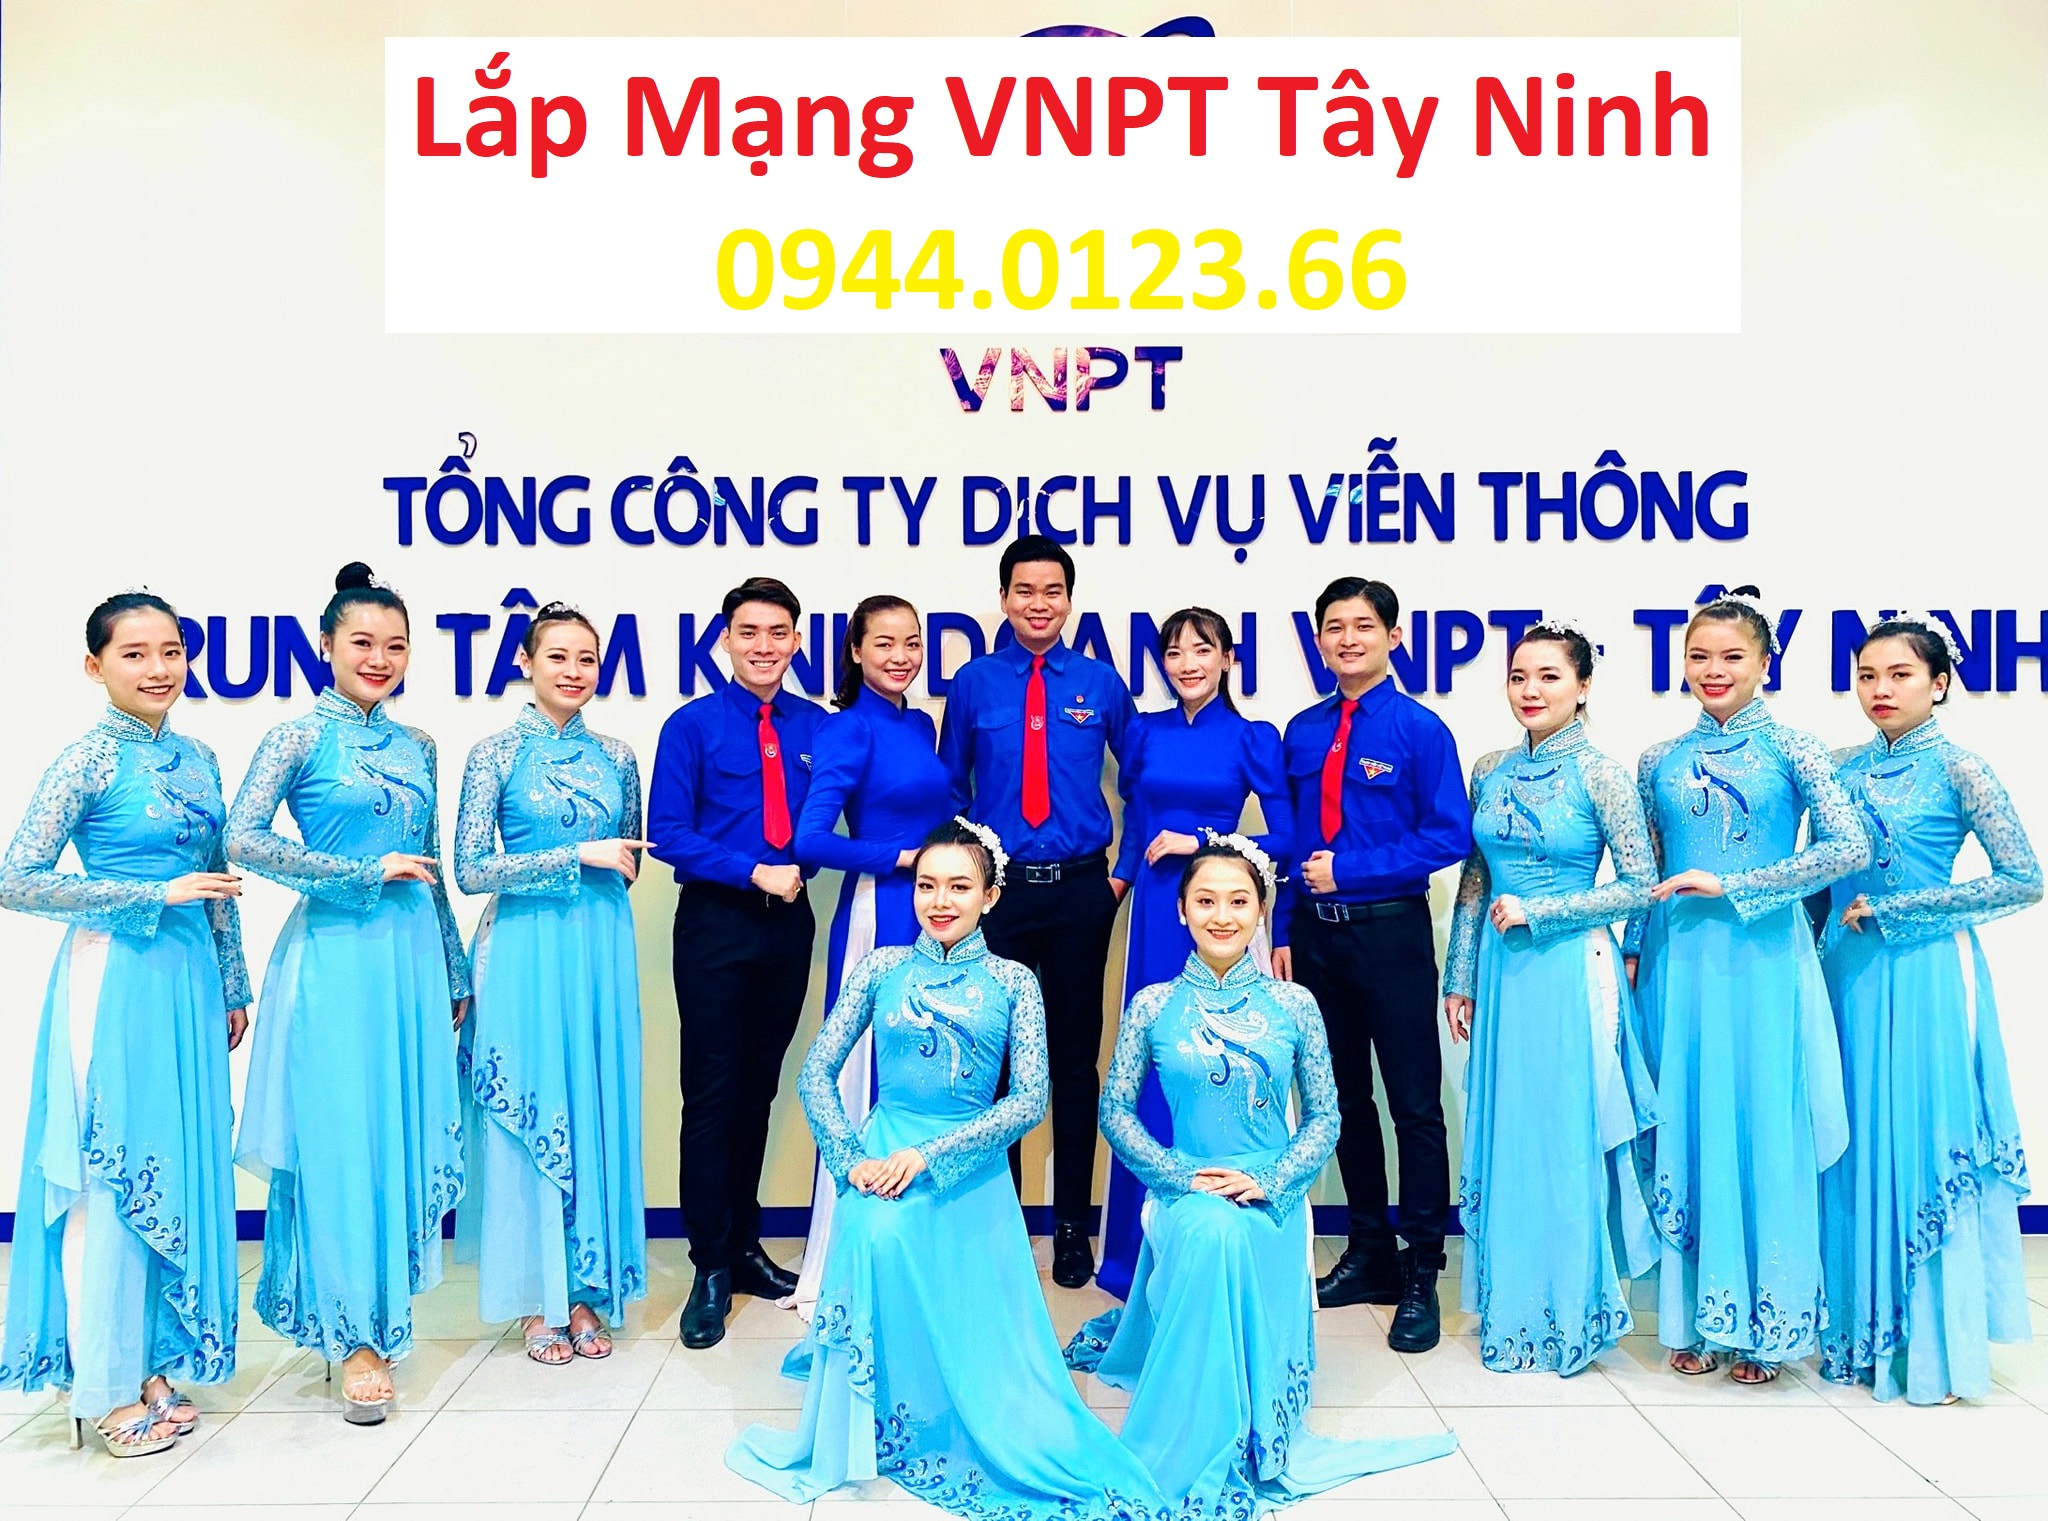 Lap Mang Vnpt Tay Ninh, lắp mạng vnpt tây ninh, lắp wifi vnpt tây ninh, lắp internet vnpt tây ninh